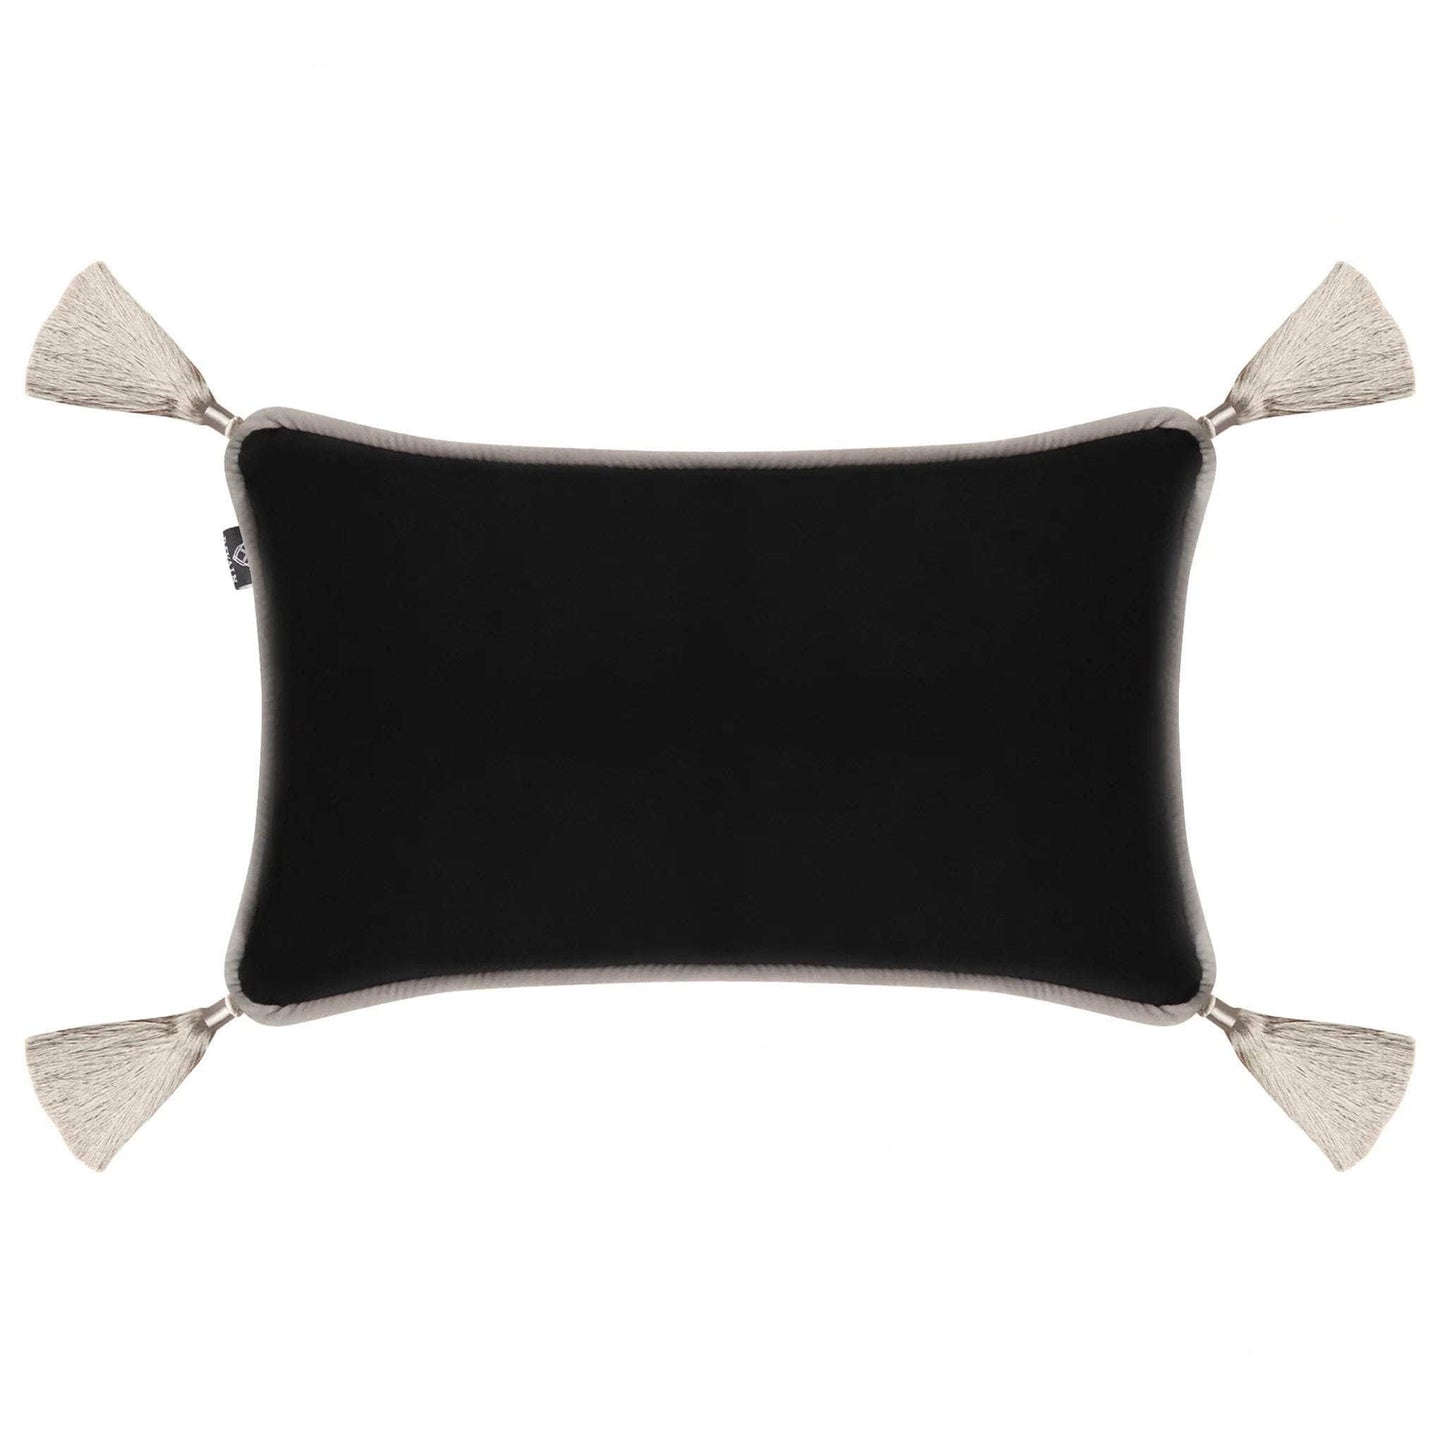 Black Velvet Rectangular Cushion with Tassels